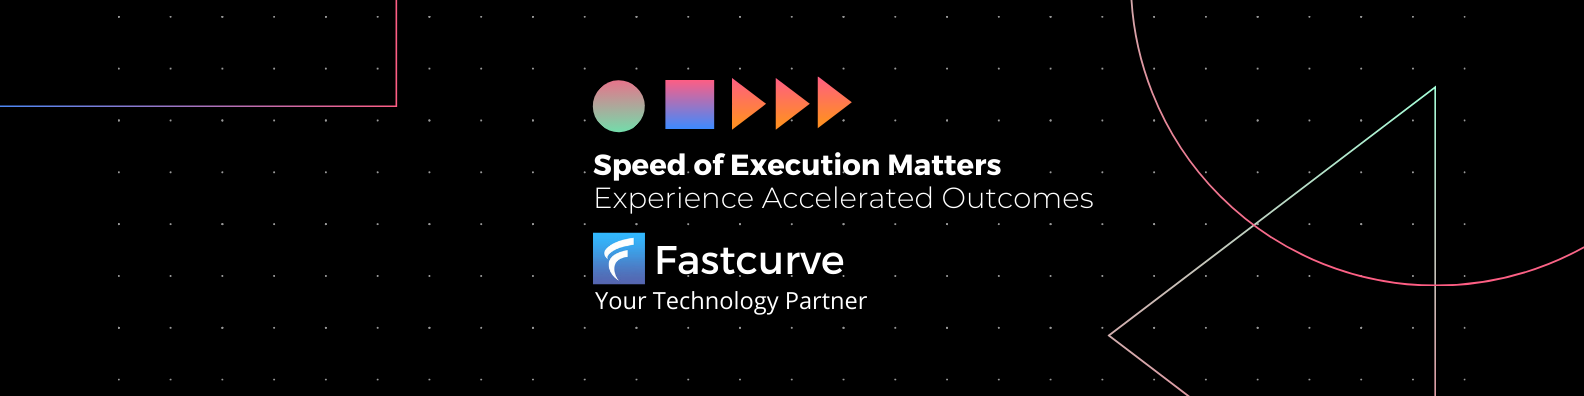 Mobile app development services | Fastcurve Services